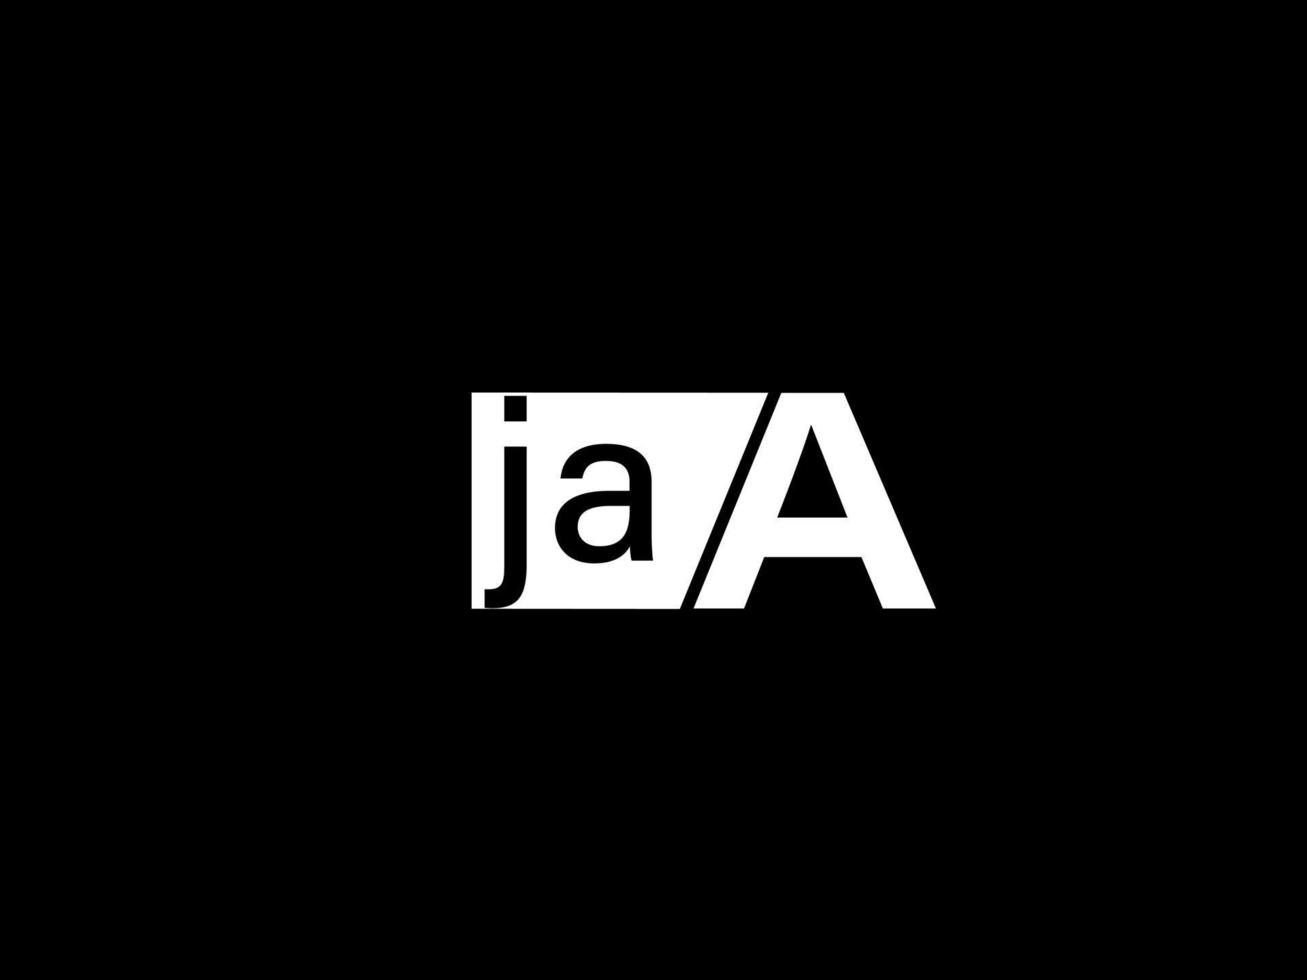 logo jaa et art vectoriel de conception graphique, icônes isolées sur fond noir